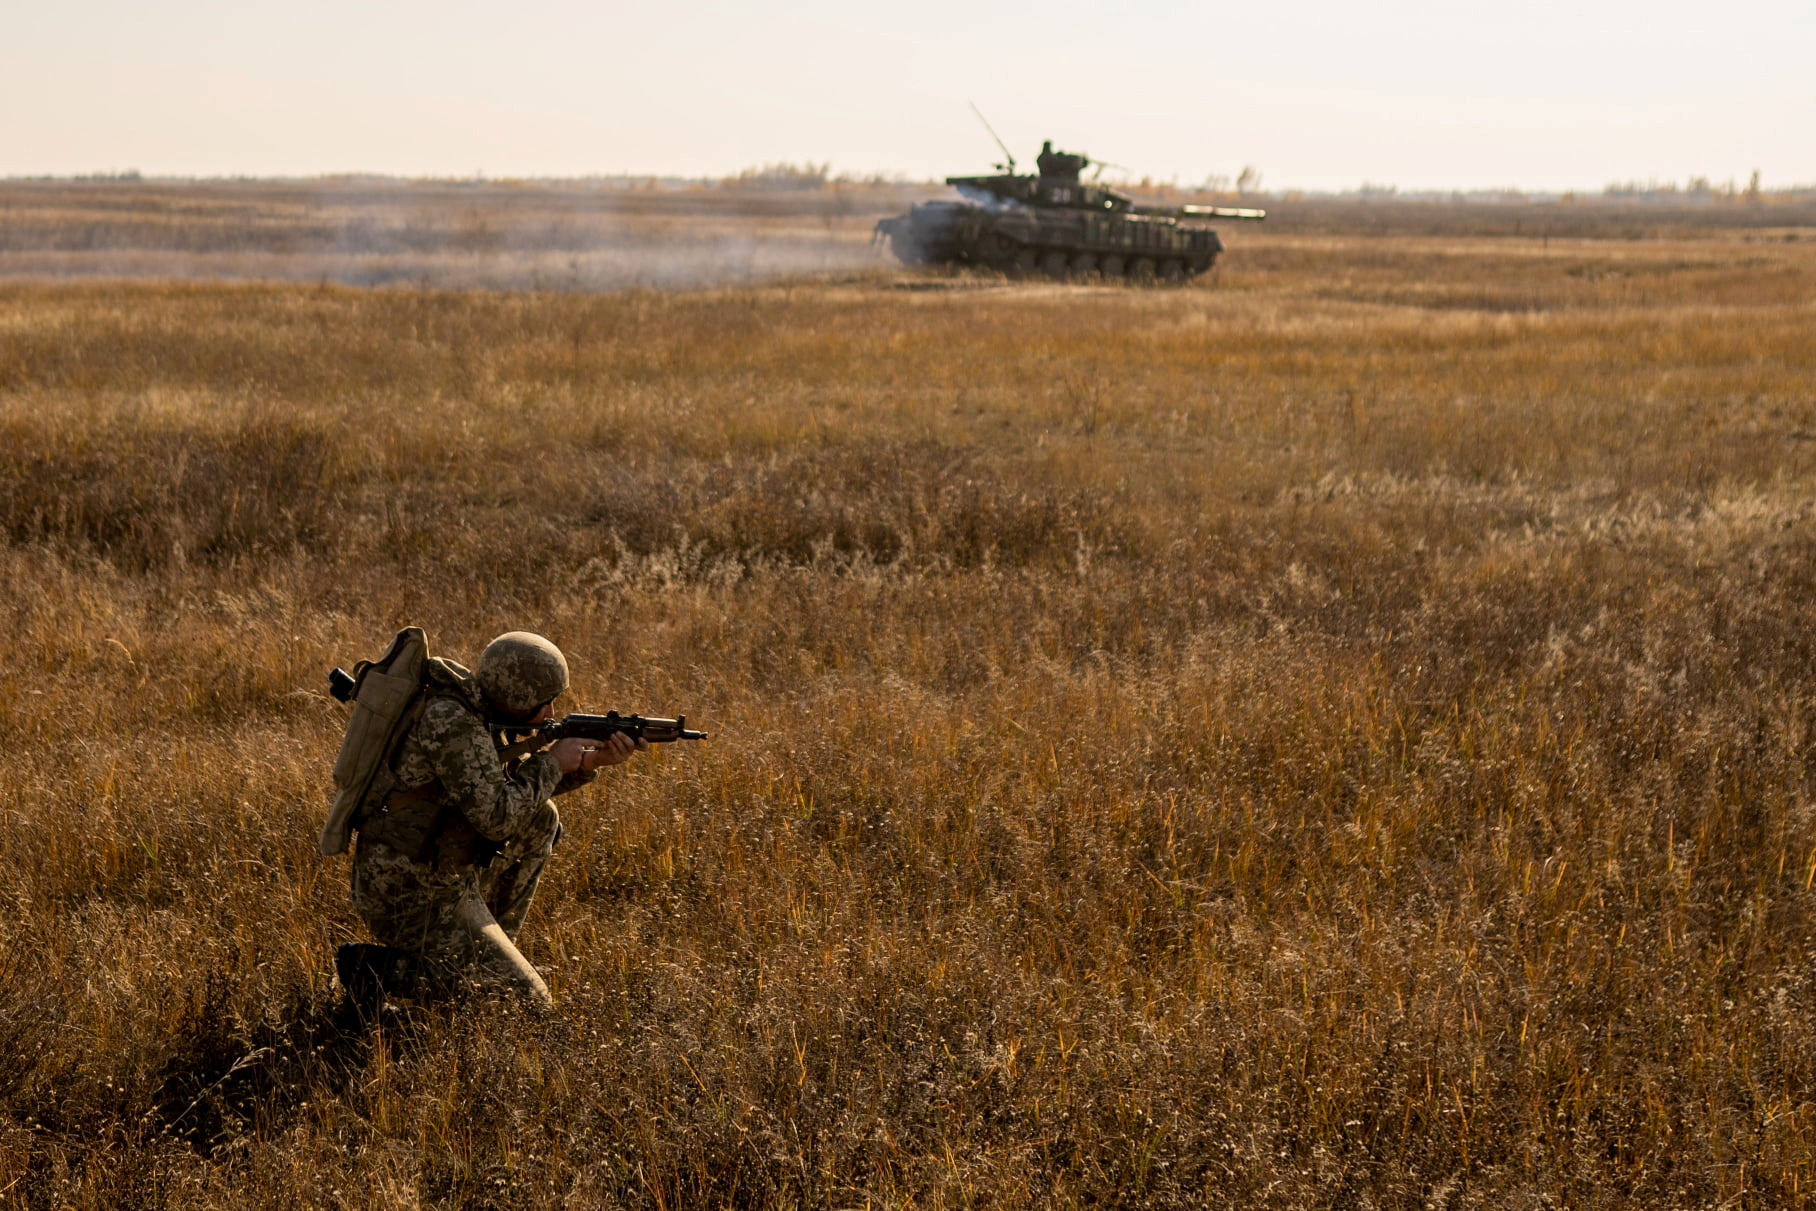 Στρατιωτικός των Ουκρανικών Ενόπλων Δυνάμεων συμμετέχει σε στρατιωτικές ασκήσεις σε ένα πεδίο εκπαίδευσης κοντά στα σύνορα με την προσαρτημένη από τη Ρωσία Κριμαία στην περιοχή Χερσώνα της Ουκρανίας, σε αυτό το φυλλάδιο φωτογραφία που κυκλοφόρησε από την υπηρεσία Τύπου του Γενικού Επιτελείου των Ενόπλων Δυνάμεων της Ουκρανίας στις 17 Νοεμβρίου. 2021. Υπηρεσία Τύπου του Γενικού Επιτελείου των Ενόπλων Δυνάμεων της Ουκρανίας/Φυλλάδιο μέσω REUTERS/Φωτογραφία αρχείου